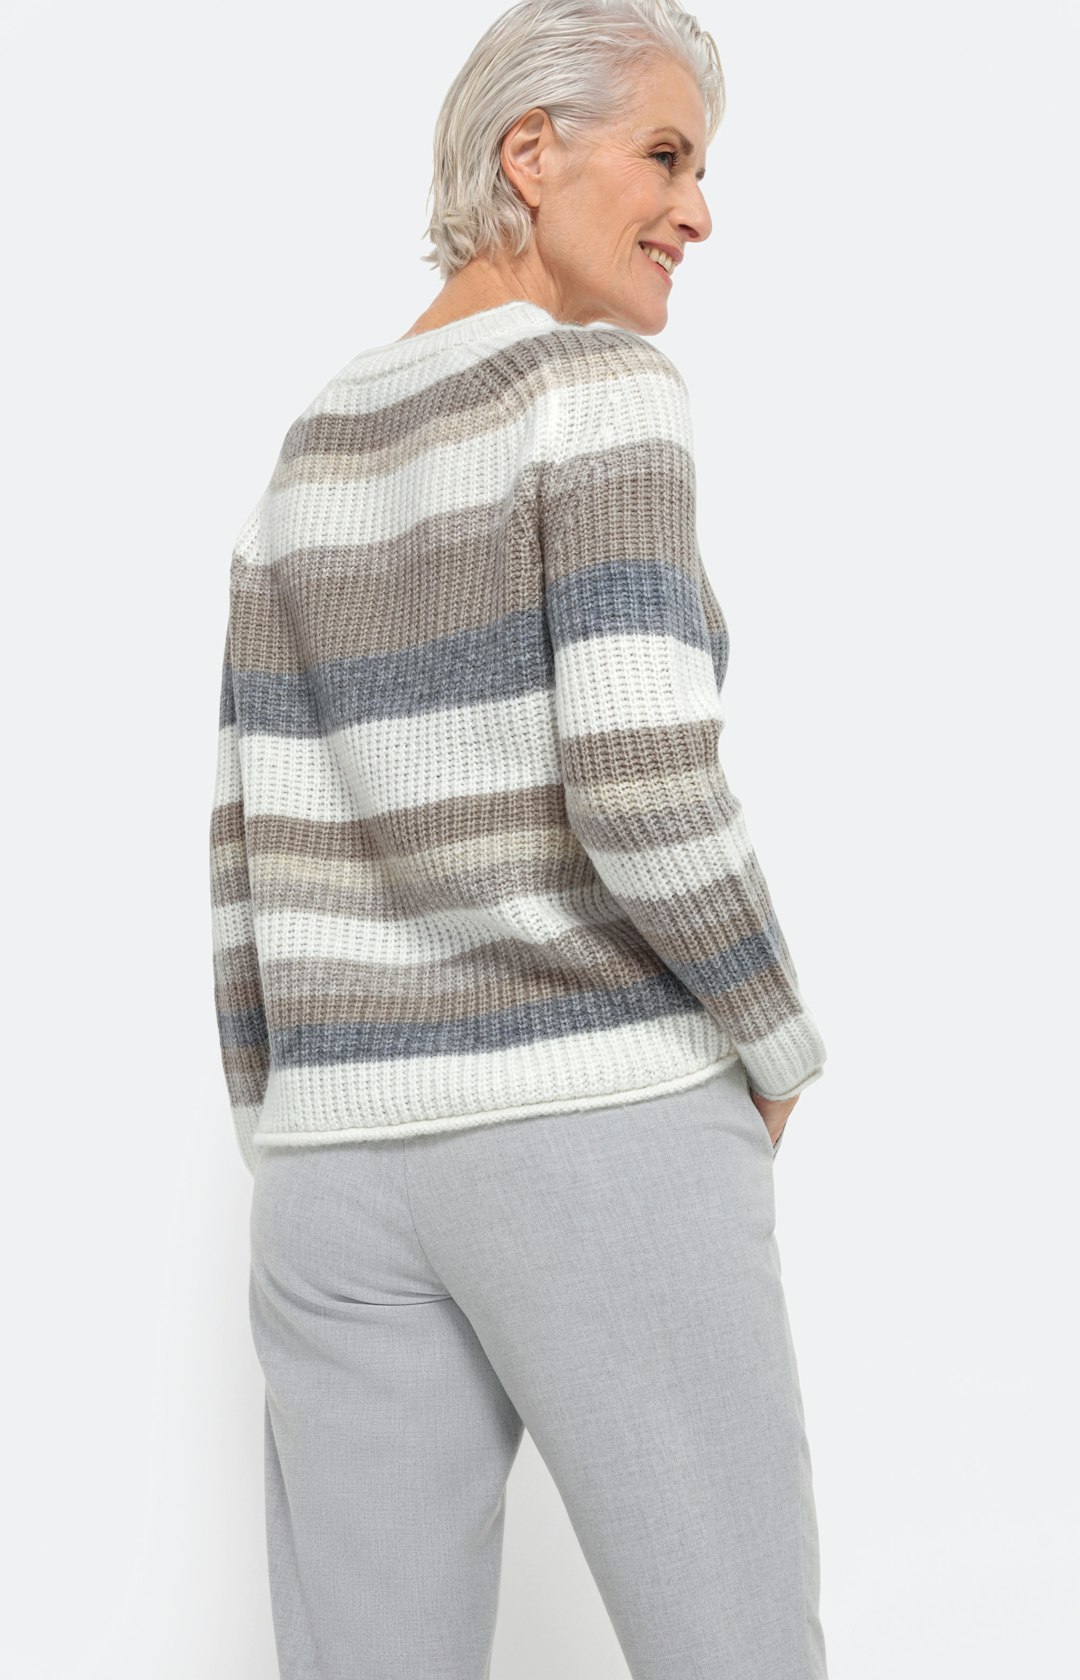 Streifen-Pullover aus Alpakamix